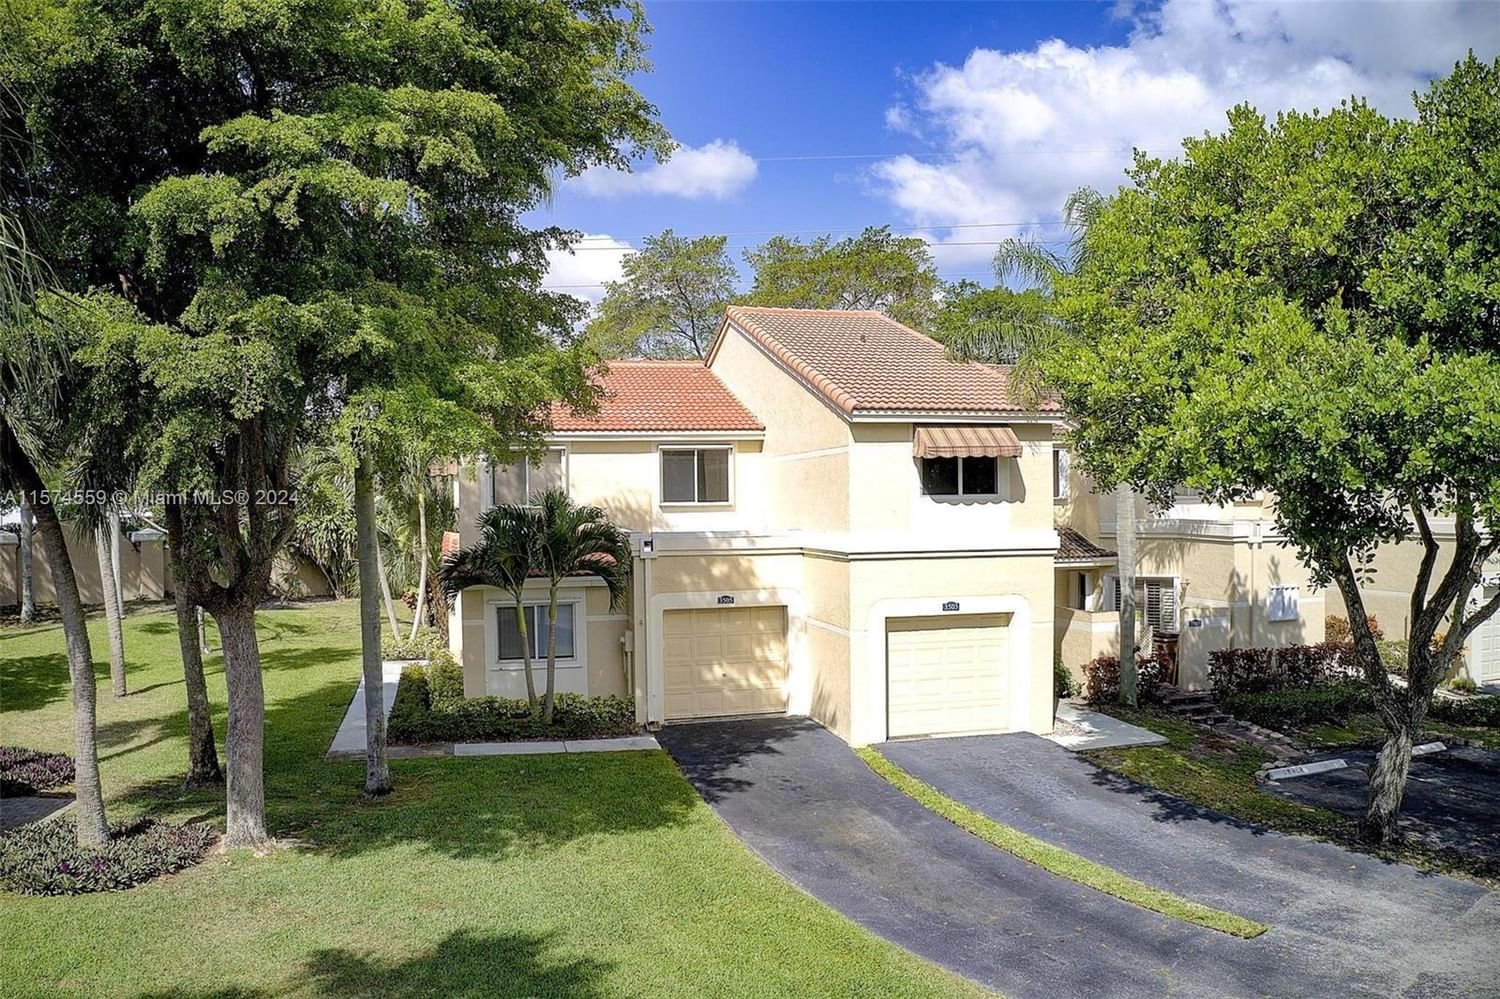 Real estate property located at 3505 Deer Creek Palladian Cir, Broward County, LAKES OF DEER CREEK, Deerfield Beach, FL